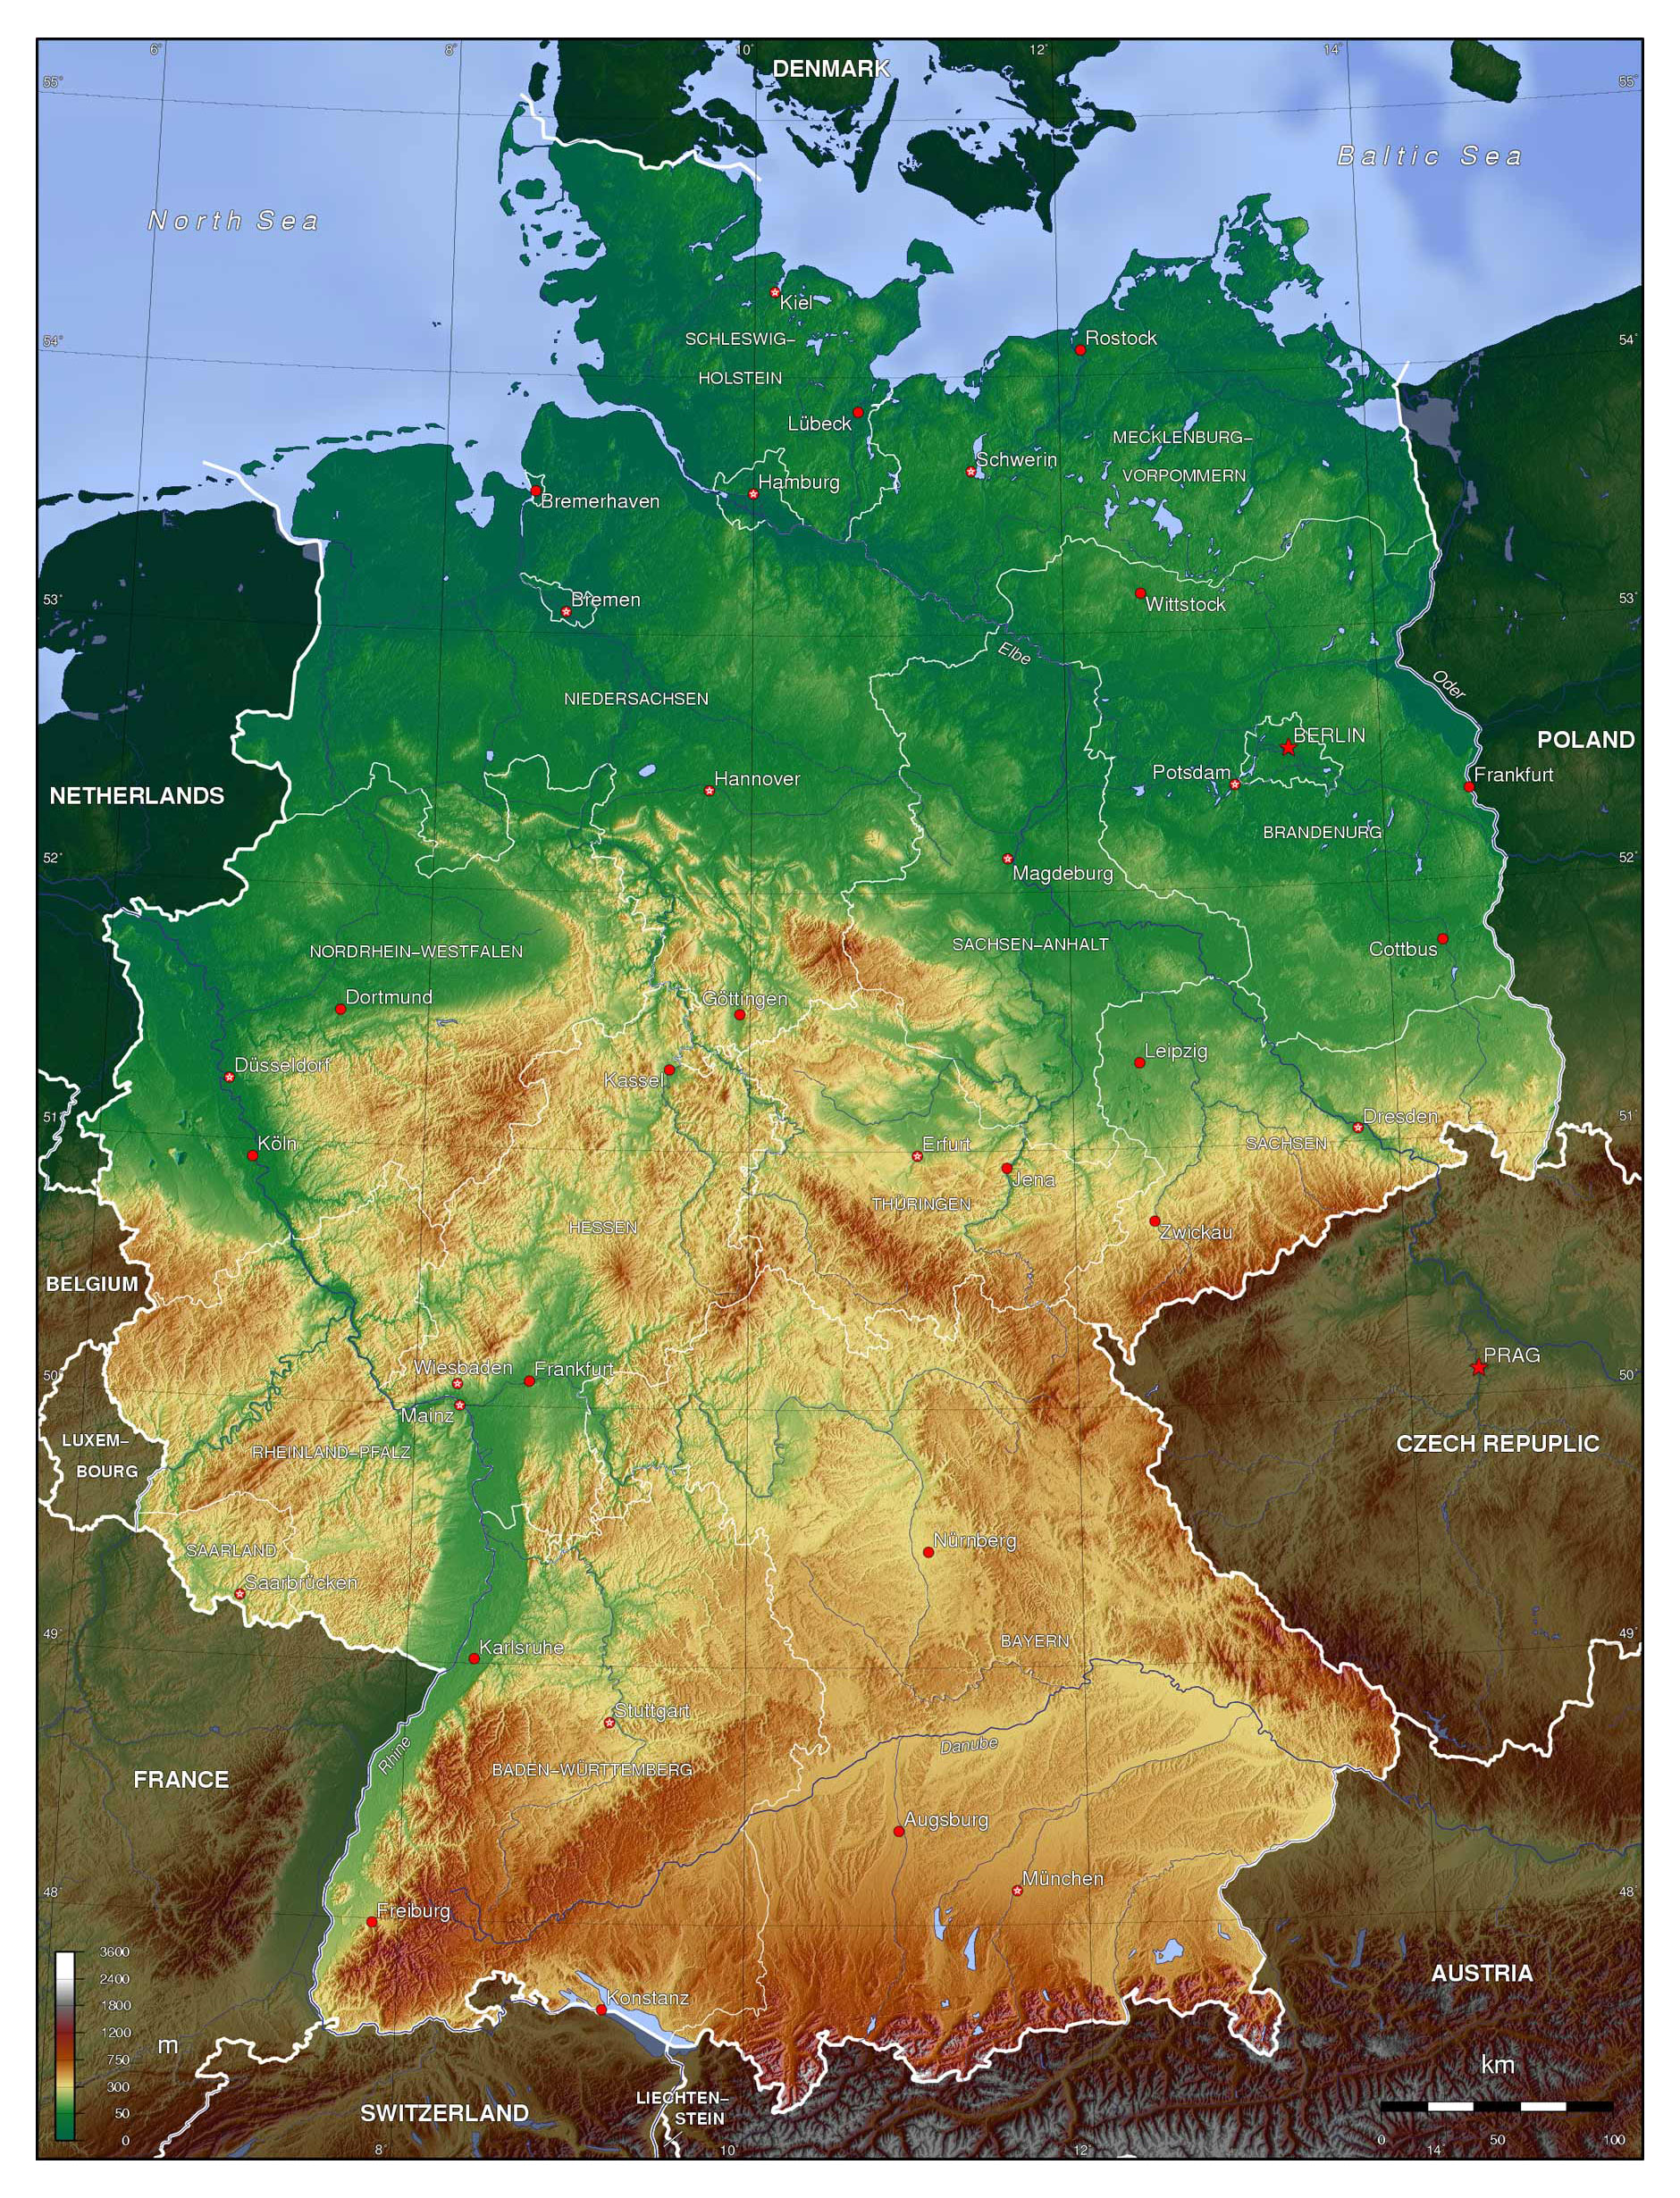 Hãy khám phá bản đồ chi tiết nước Đức và tìm hiểu những thông tin được cập nhật đến năm